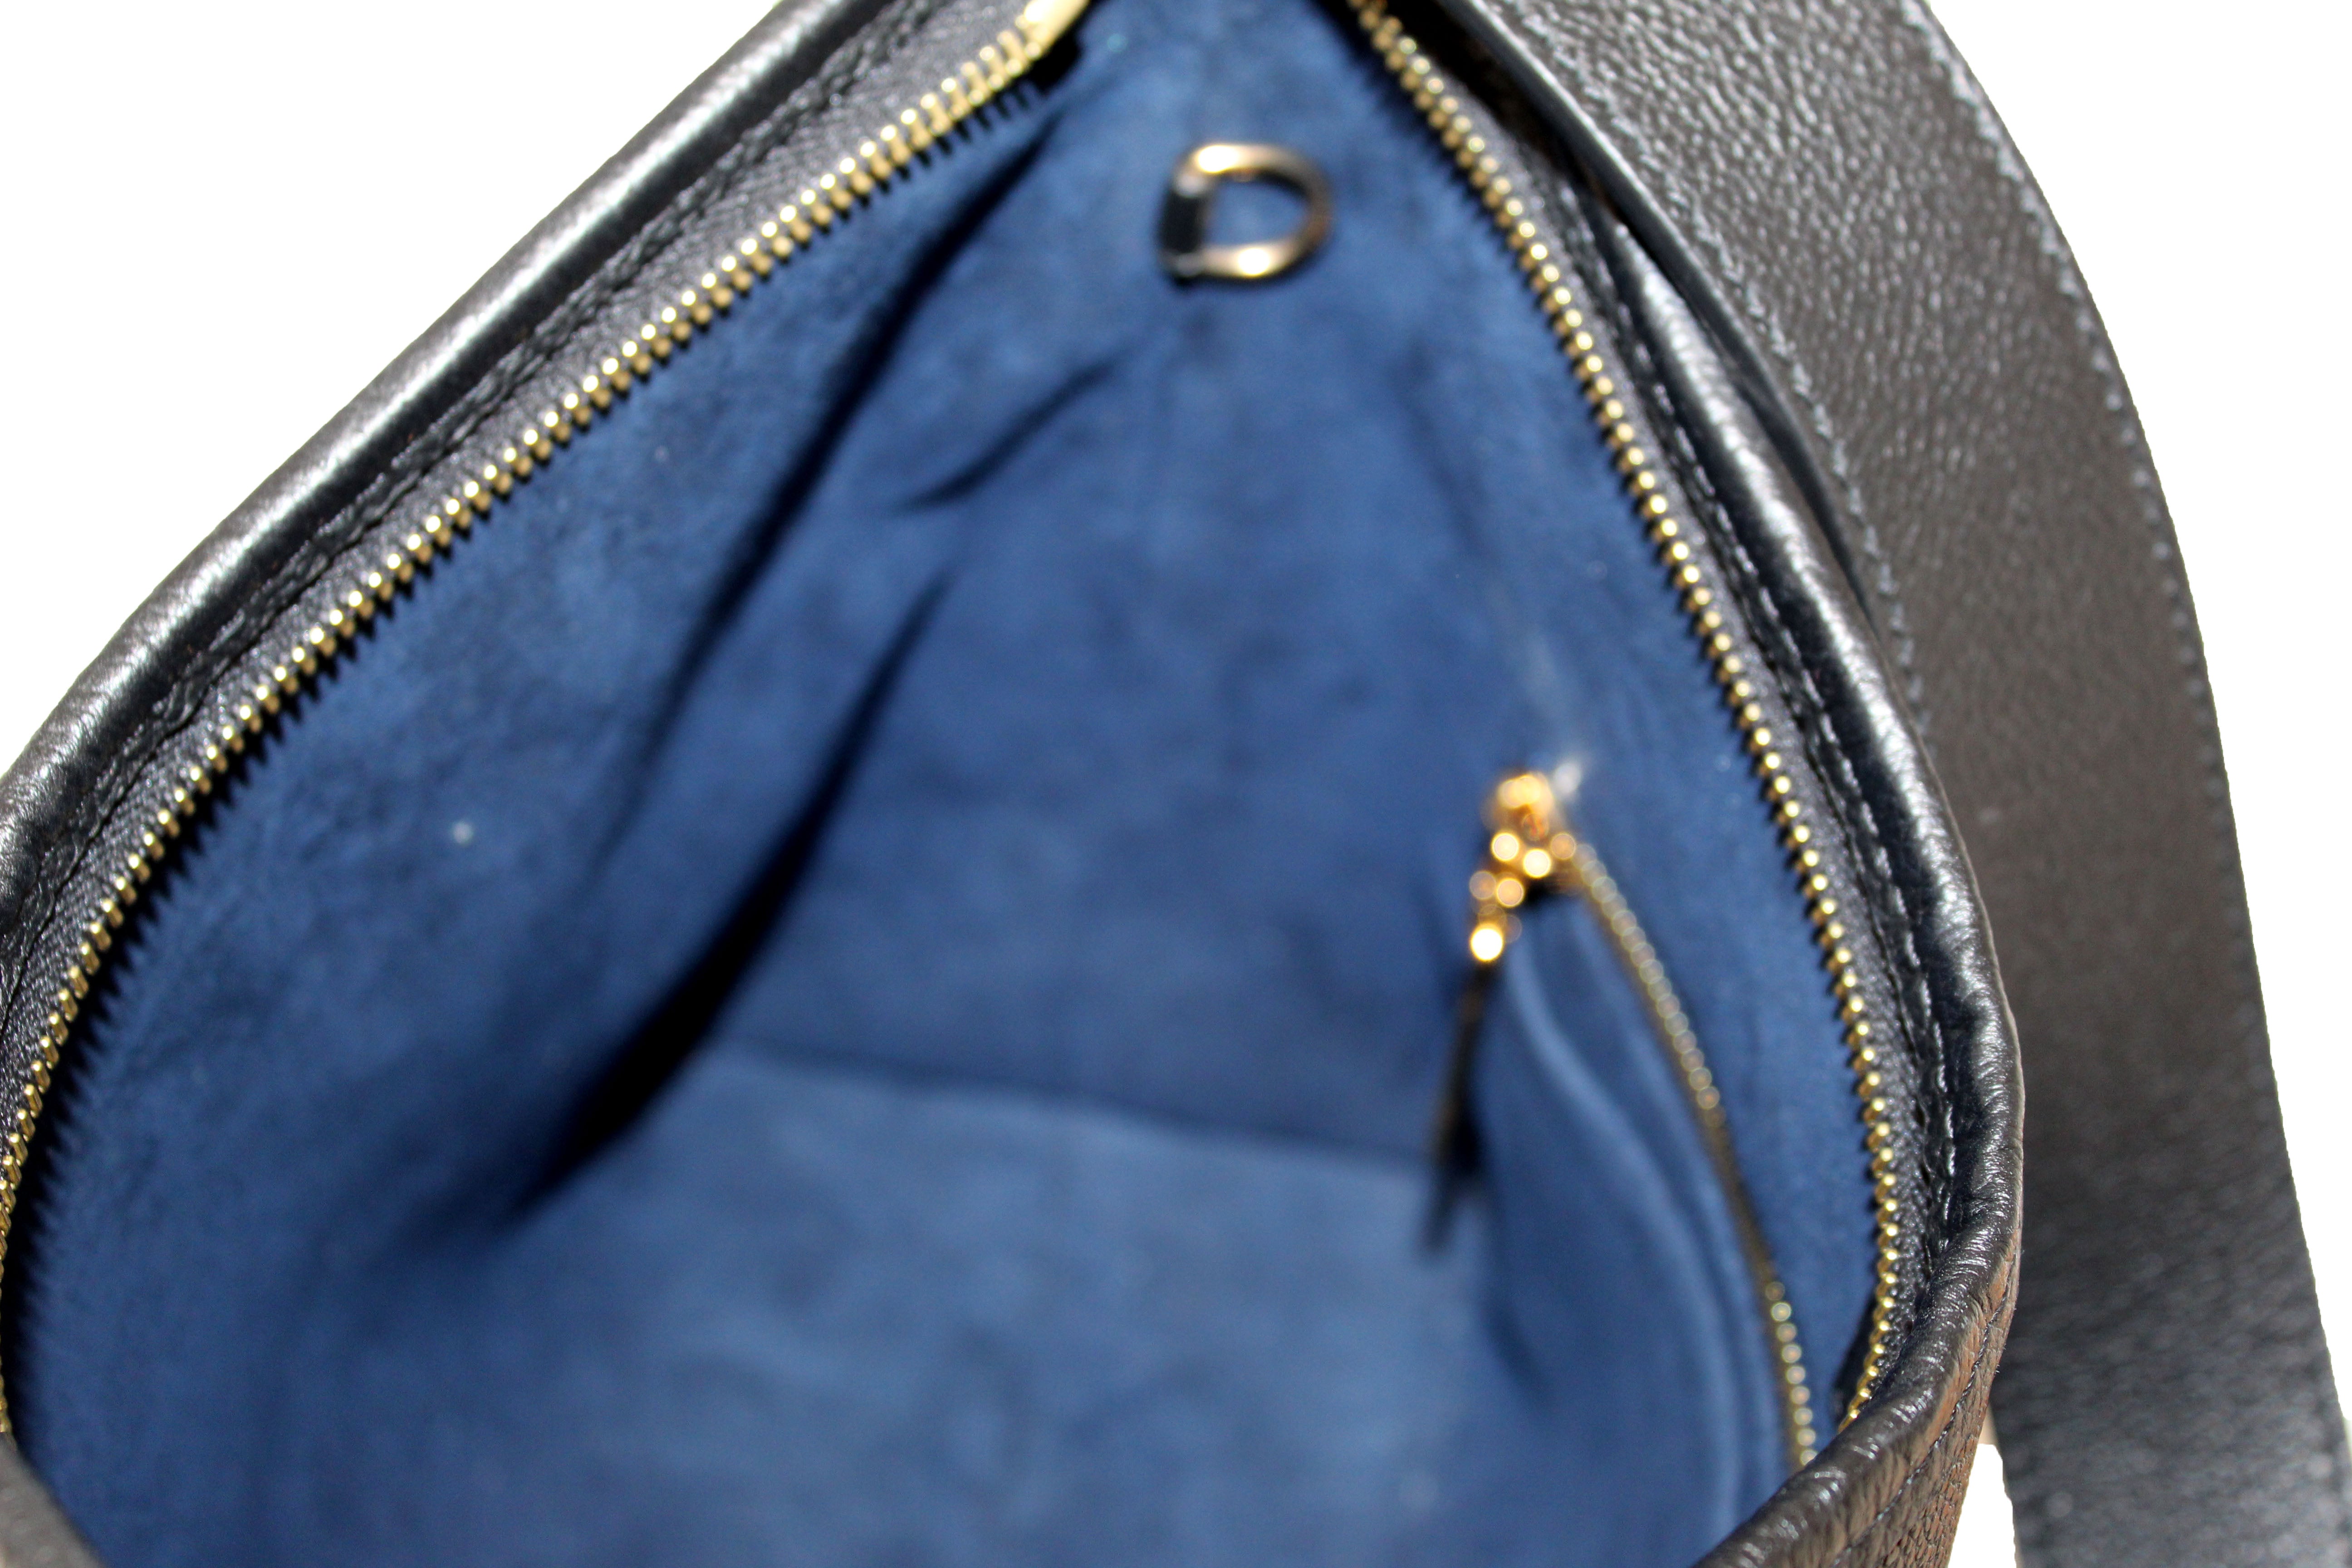 Authentic Louis Vuitton Black Monogram Empreinte Leather CarryAll PM Bag